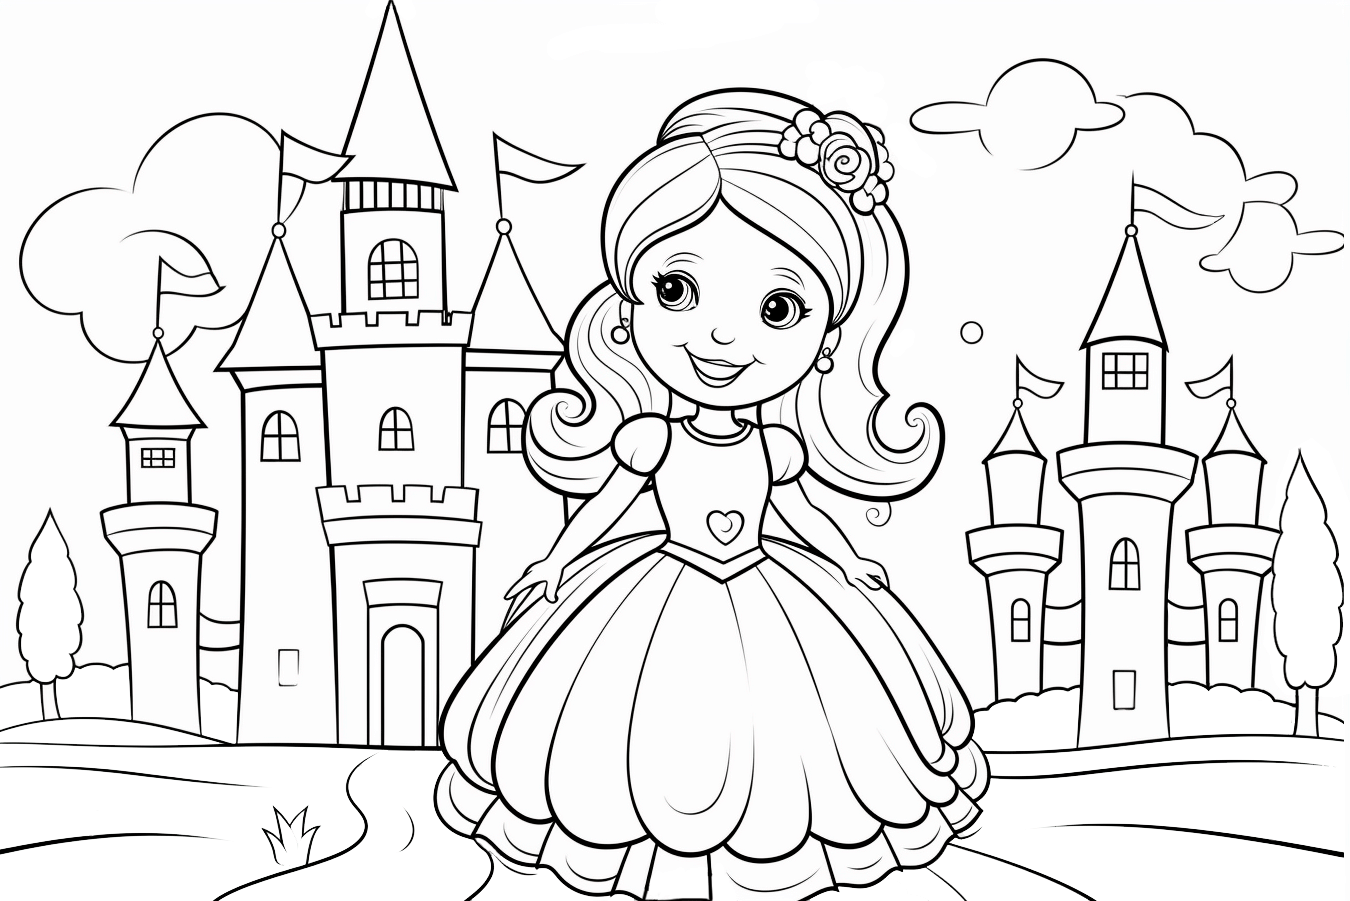 Imagen para colorear de una princesa con vestido delante de su castillo